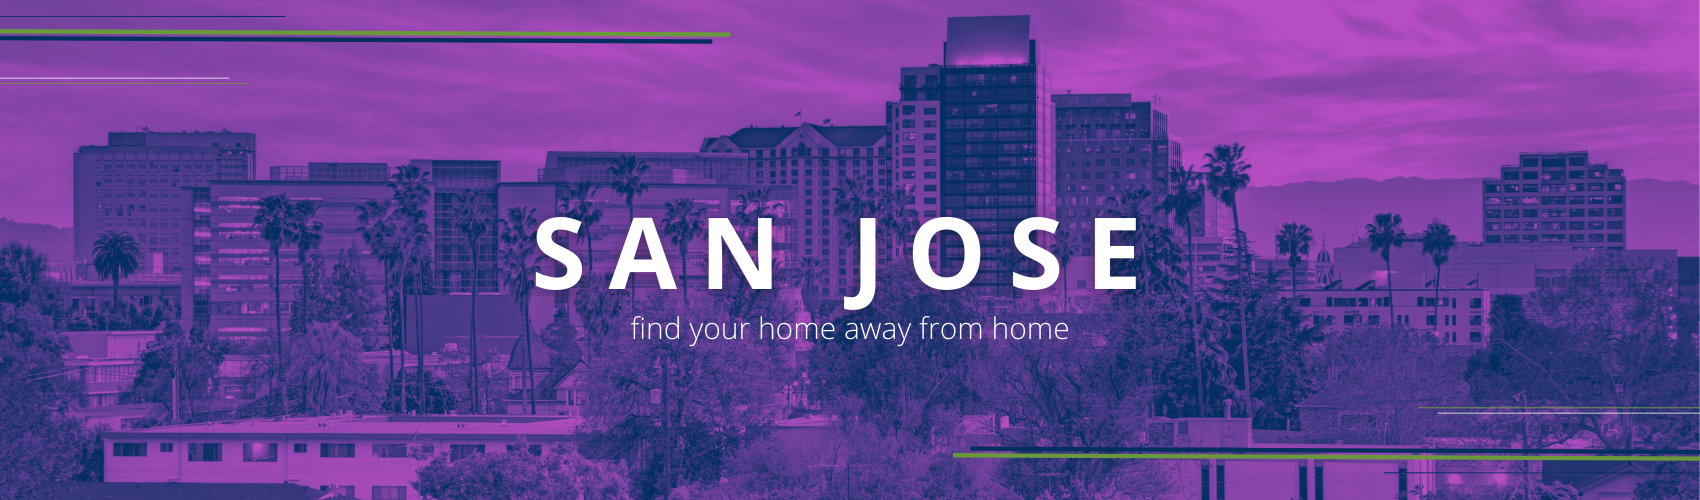 San Jose Intern Housing